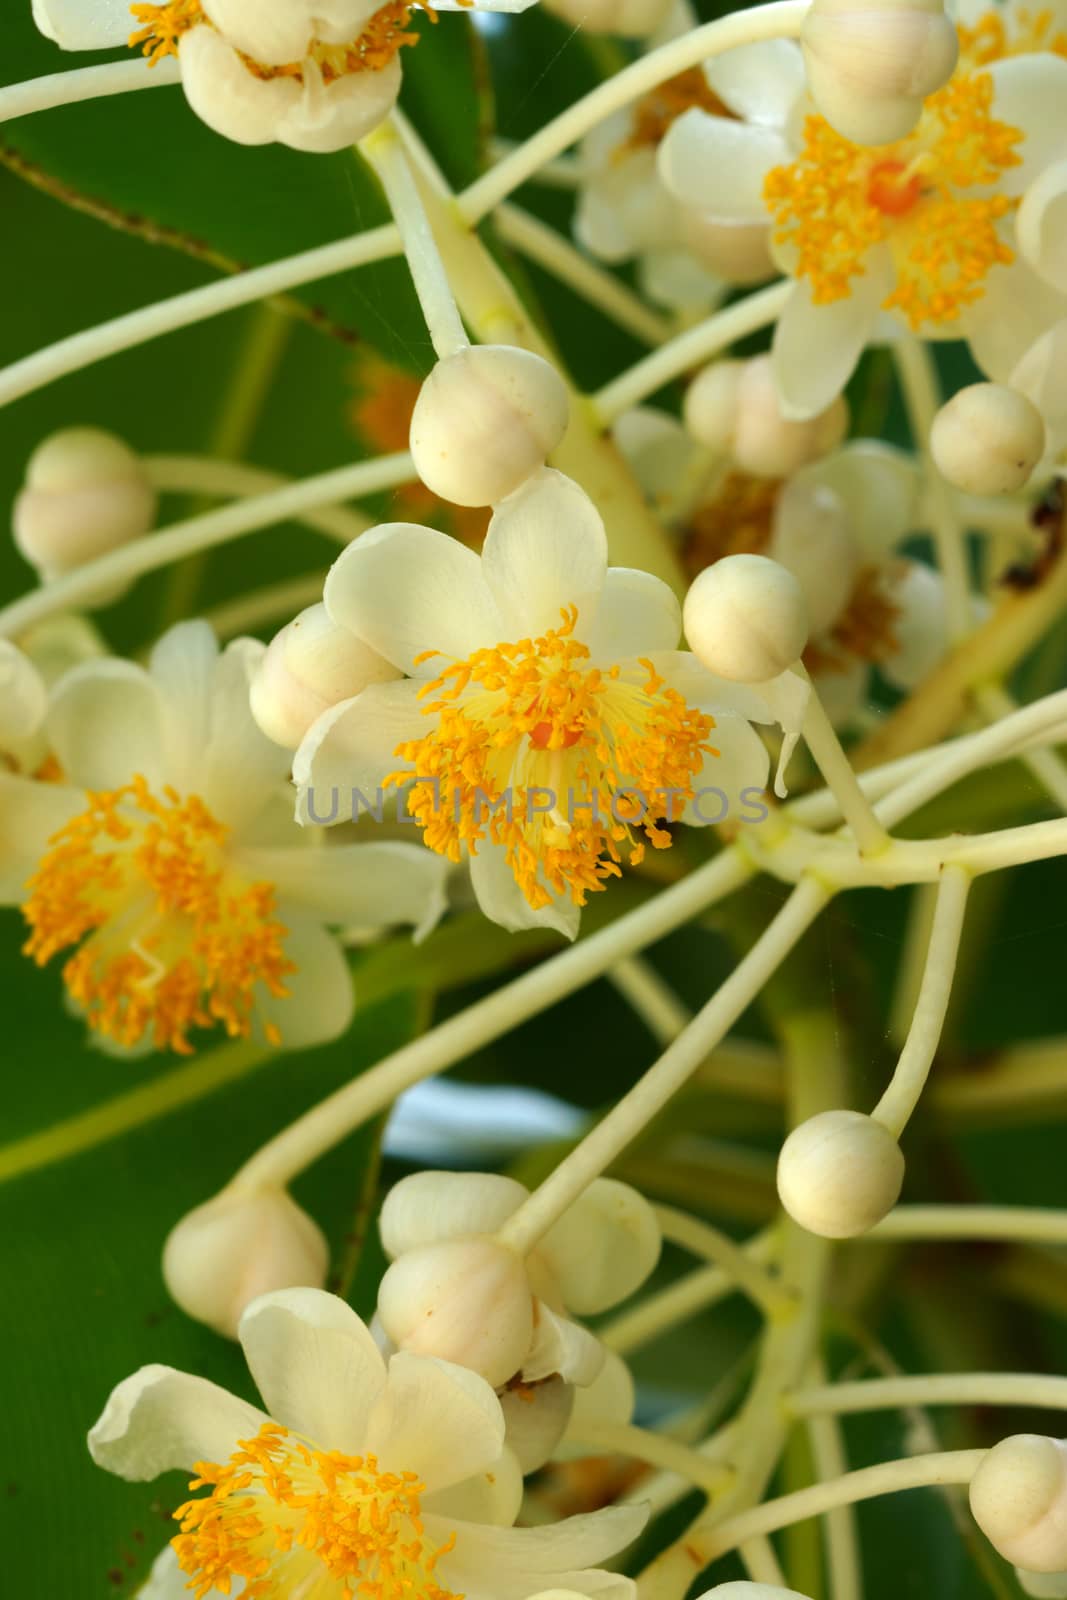 Laurel wood flower (Calophyllum inophyllum)